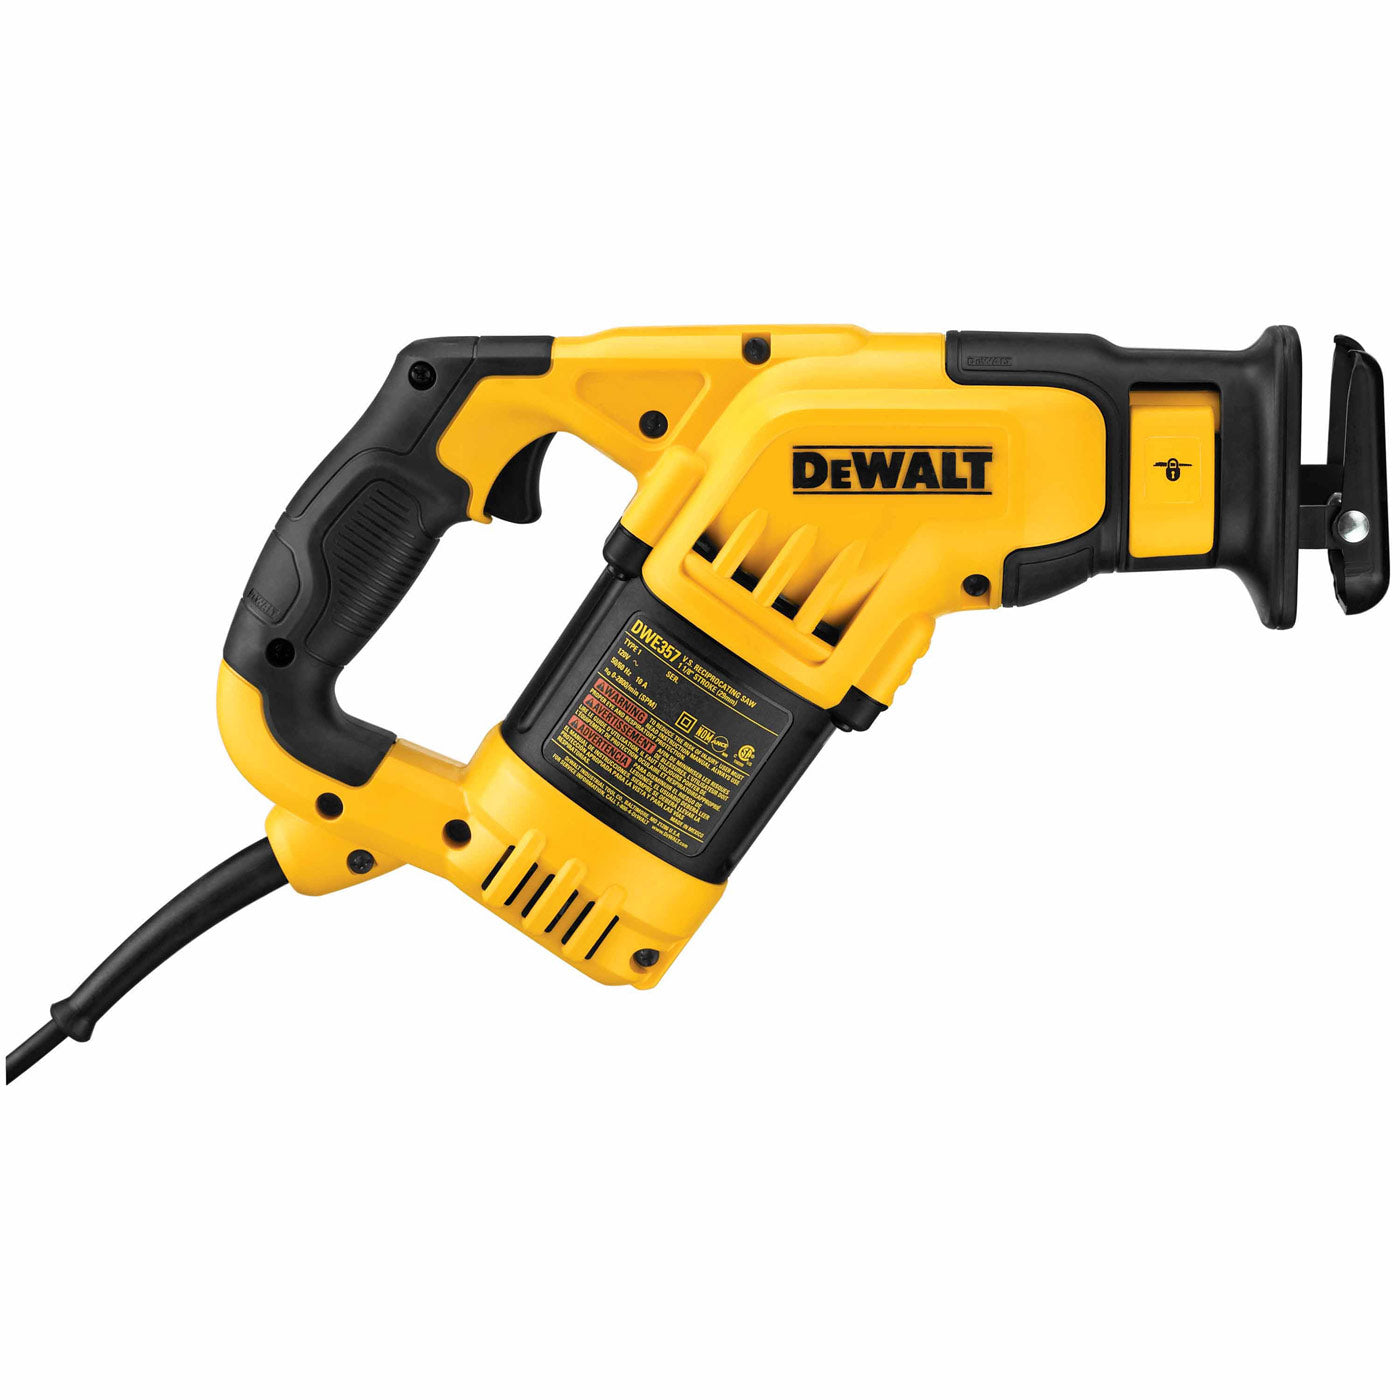 DeWalt DWE357 10 Amp Compact Reciprocating Saw